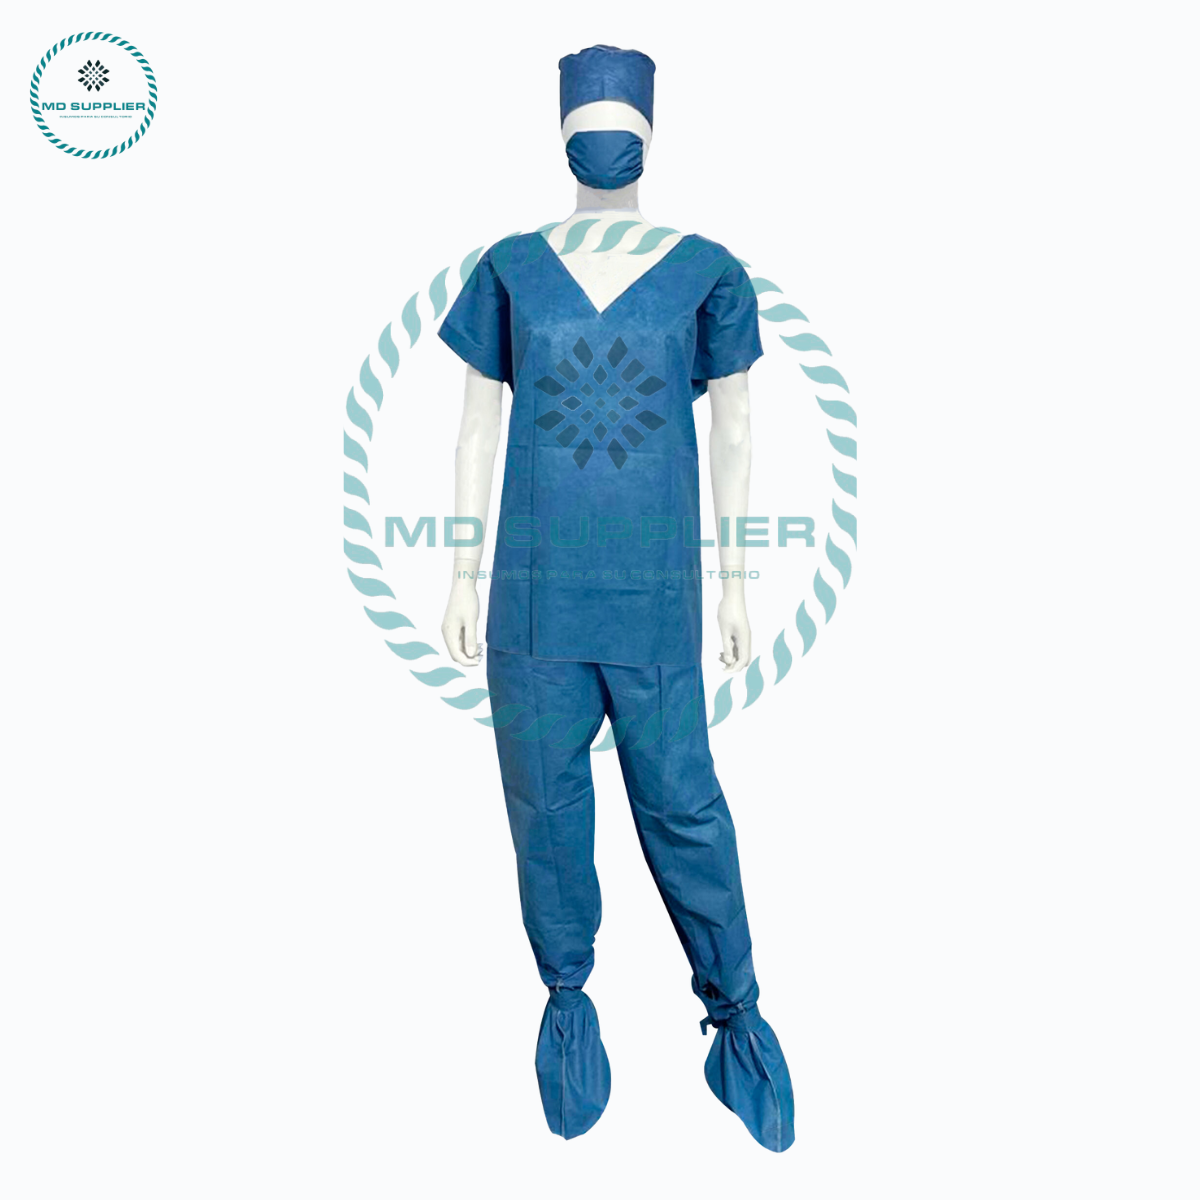 Kit para cirujano SMS con pijama.